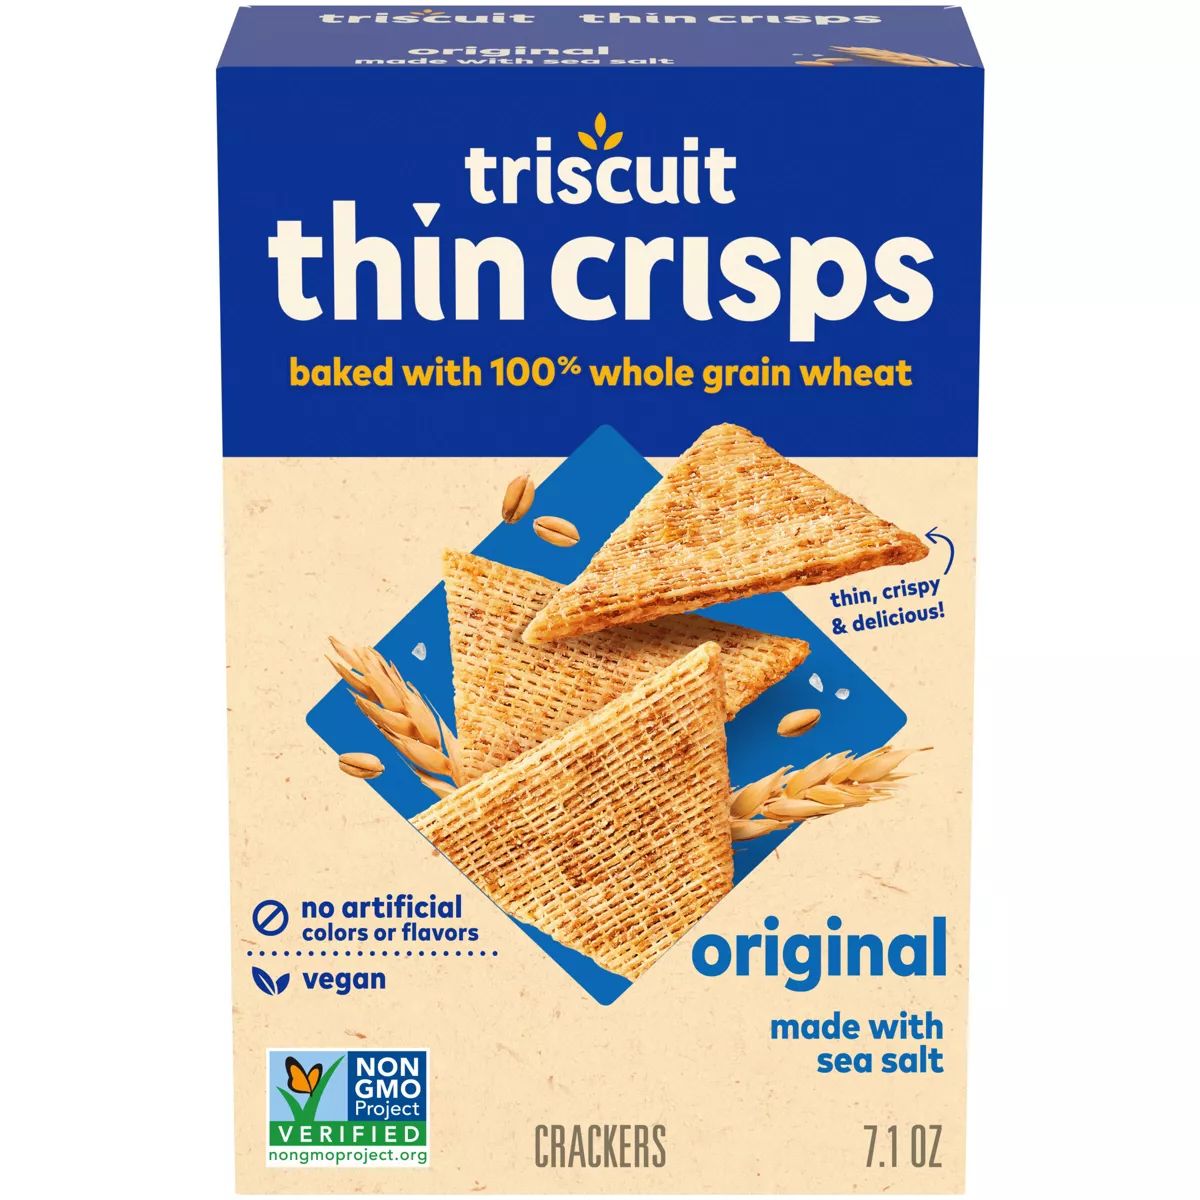 Triscuit Thin Crisps Whole Grain Wheat Vegan Crackers - 7.1oz | Target